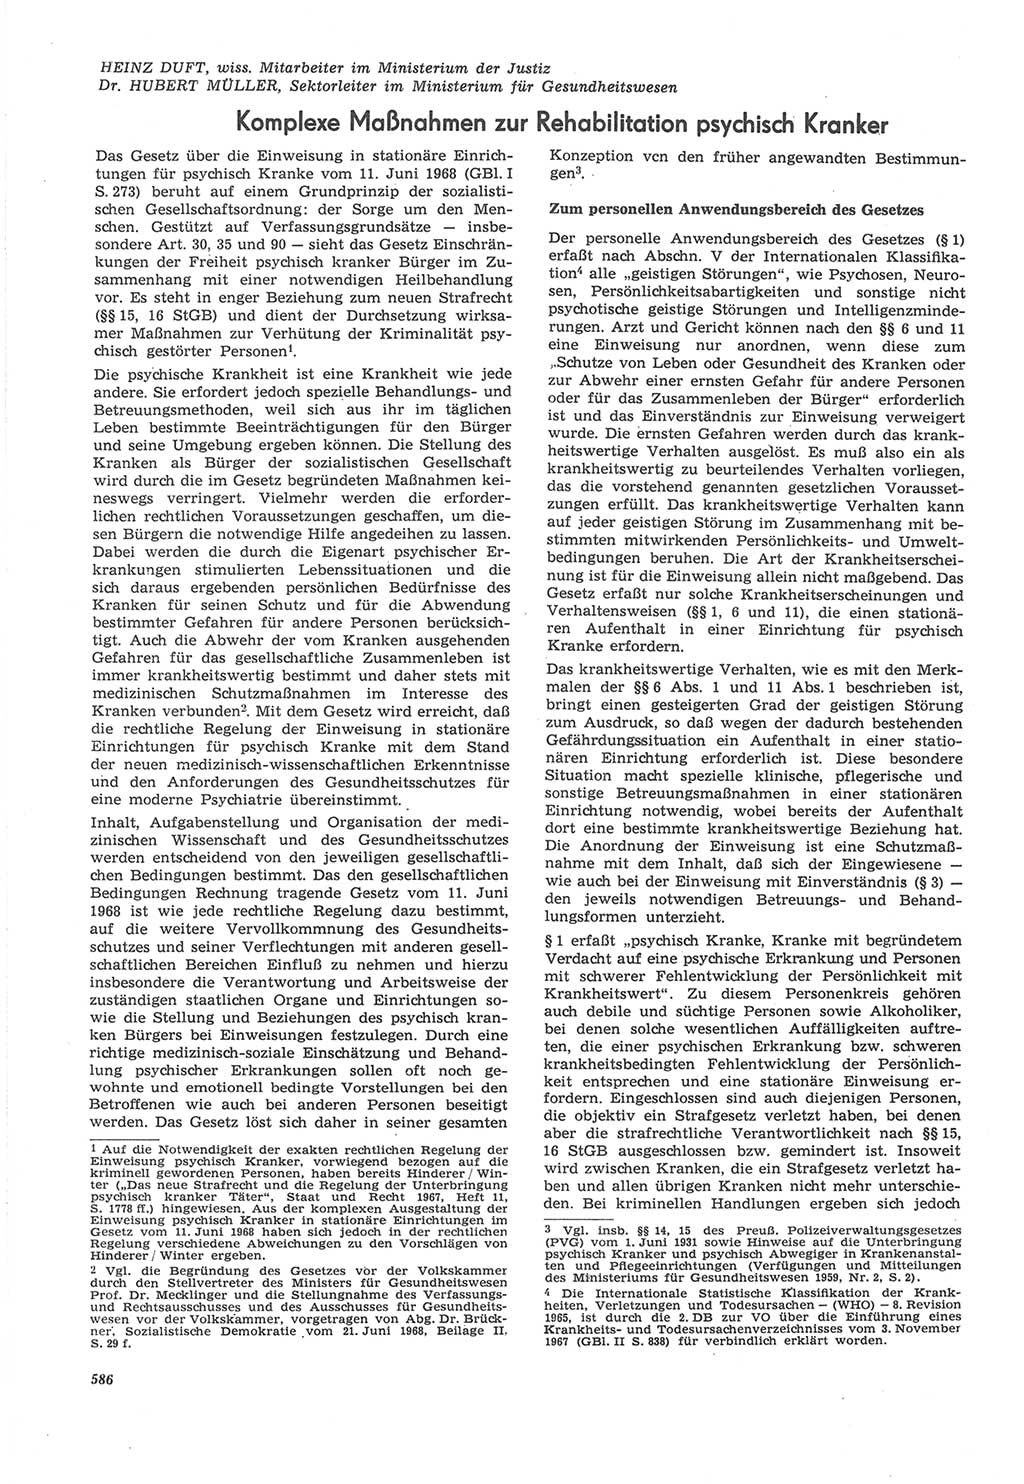 Neue Justiz (NJ), Zeitschrift für Recht und Rechtswissenschaft [Deutsche Demokratische Republik (DDR)], 22. Jahrgang 1968, Seite 586 (NJ DDR 1968, S. 586)